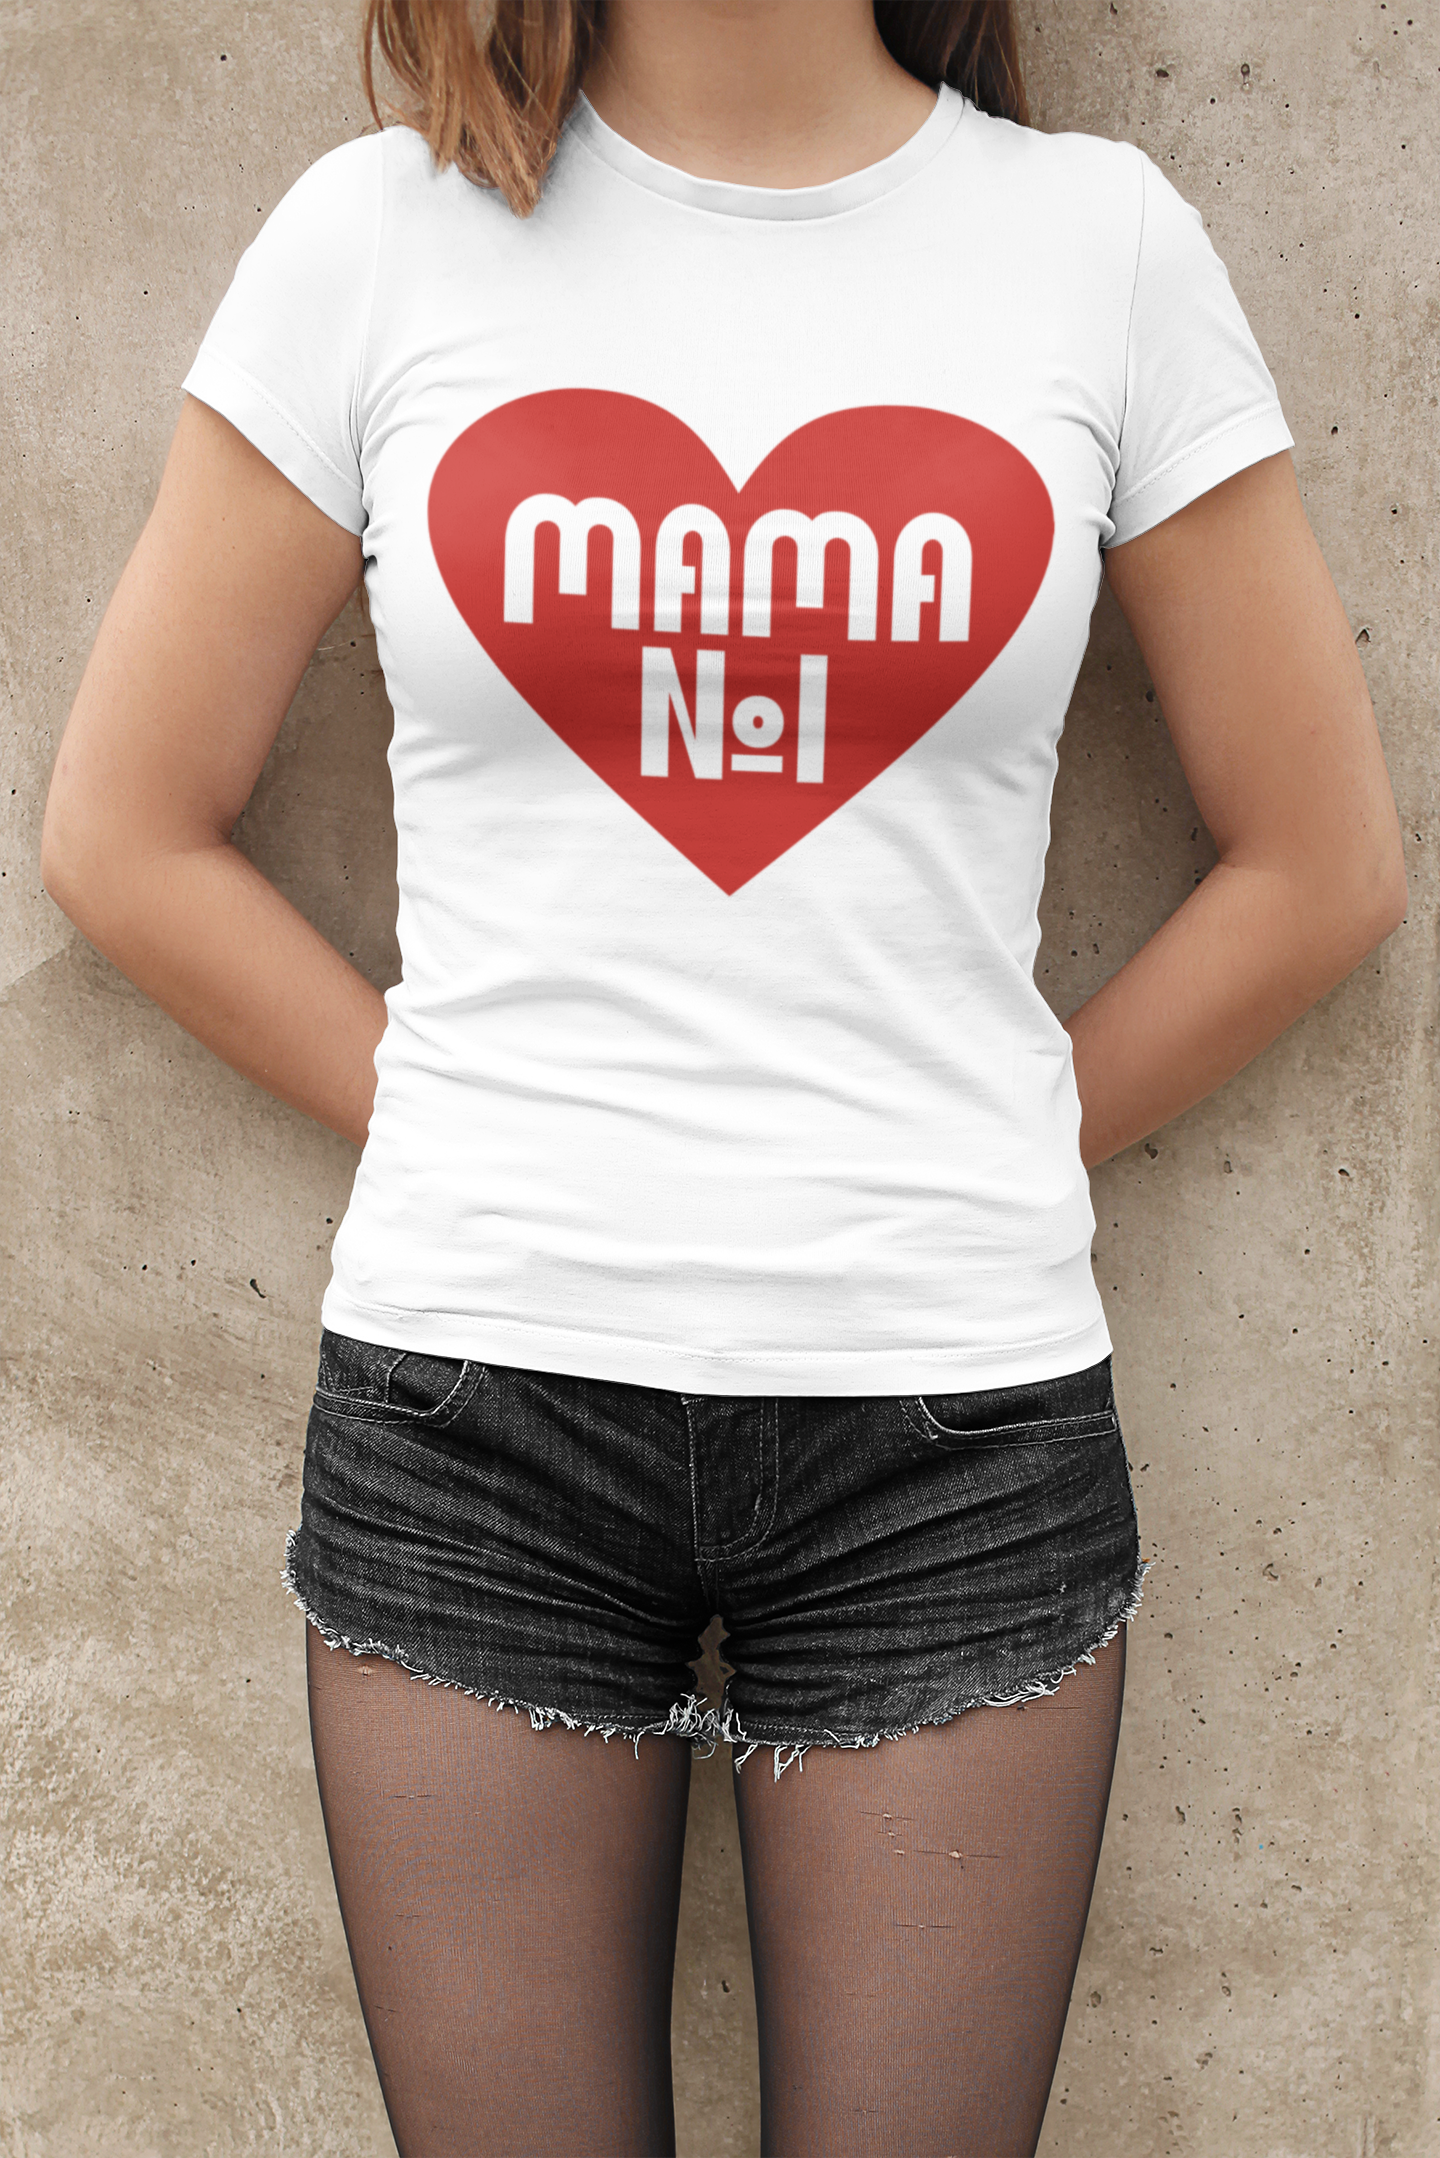 Тениска Мама Номер 1 - Подарък за Св.Валентин или 8 Март